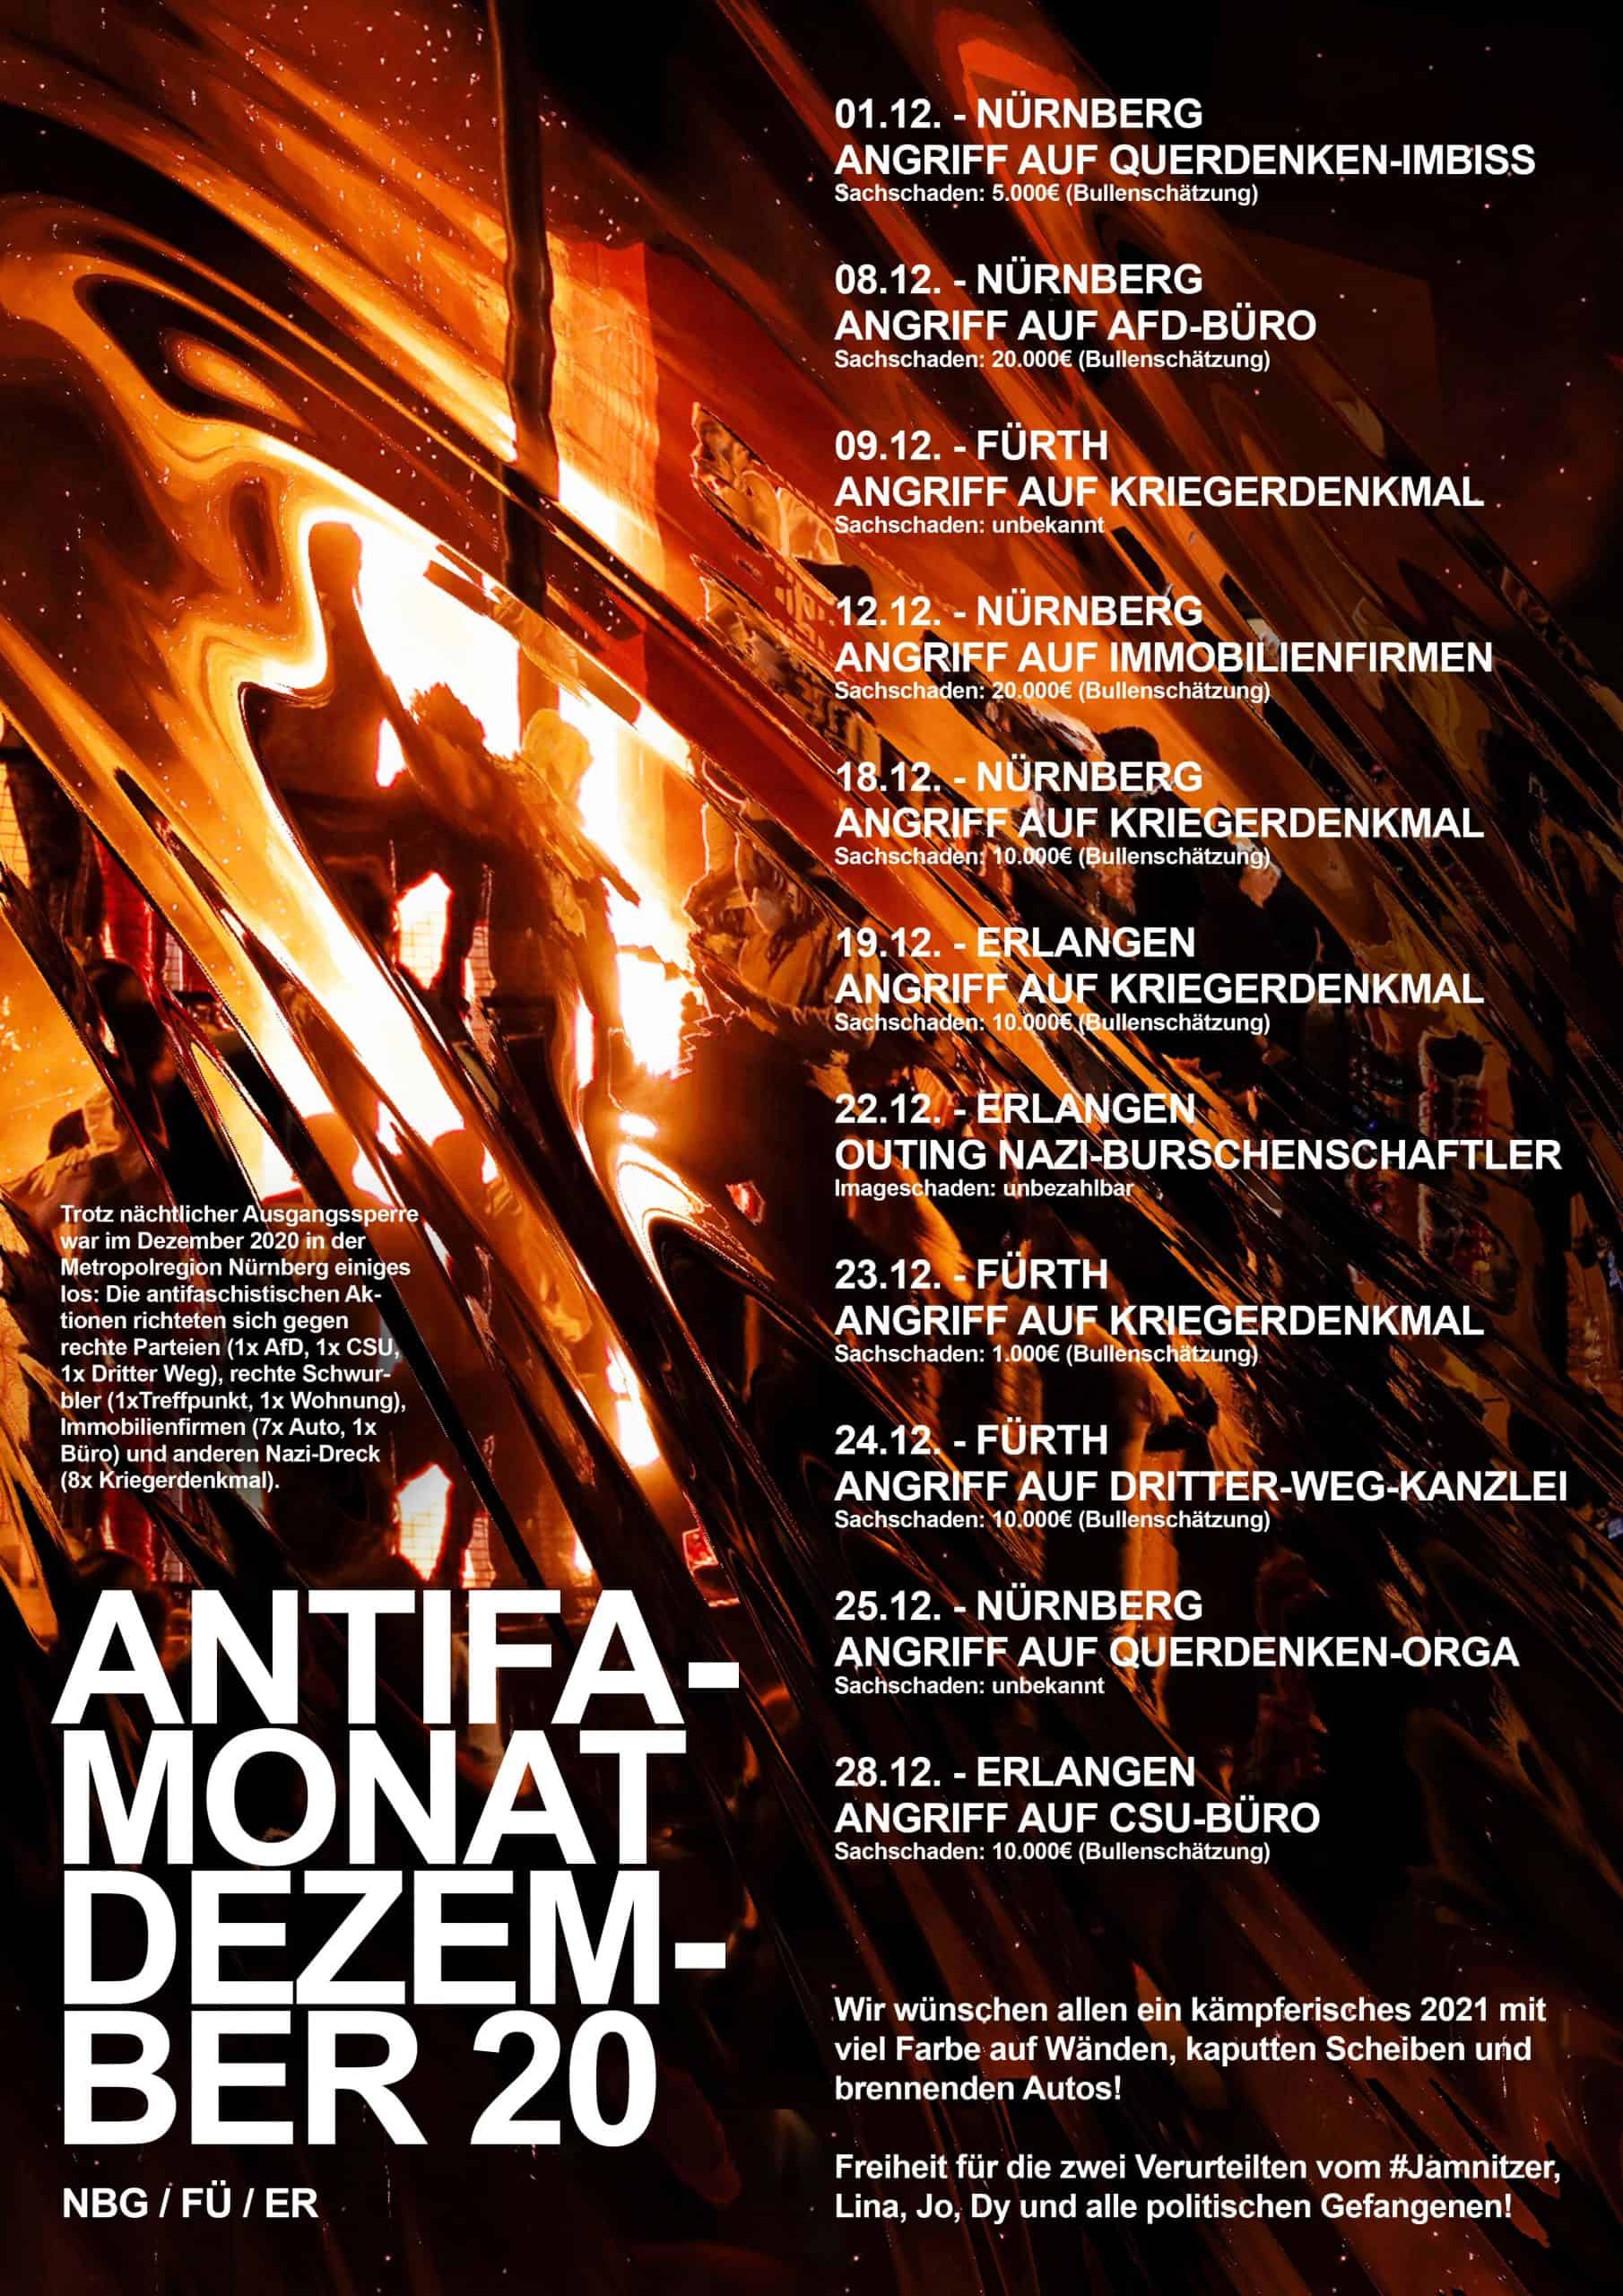 Mit einen auf Indymedia veröffentlichten Plakat feieren die fränkischen Linken die Anschläge und rufen zu weiteren Taten auf